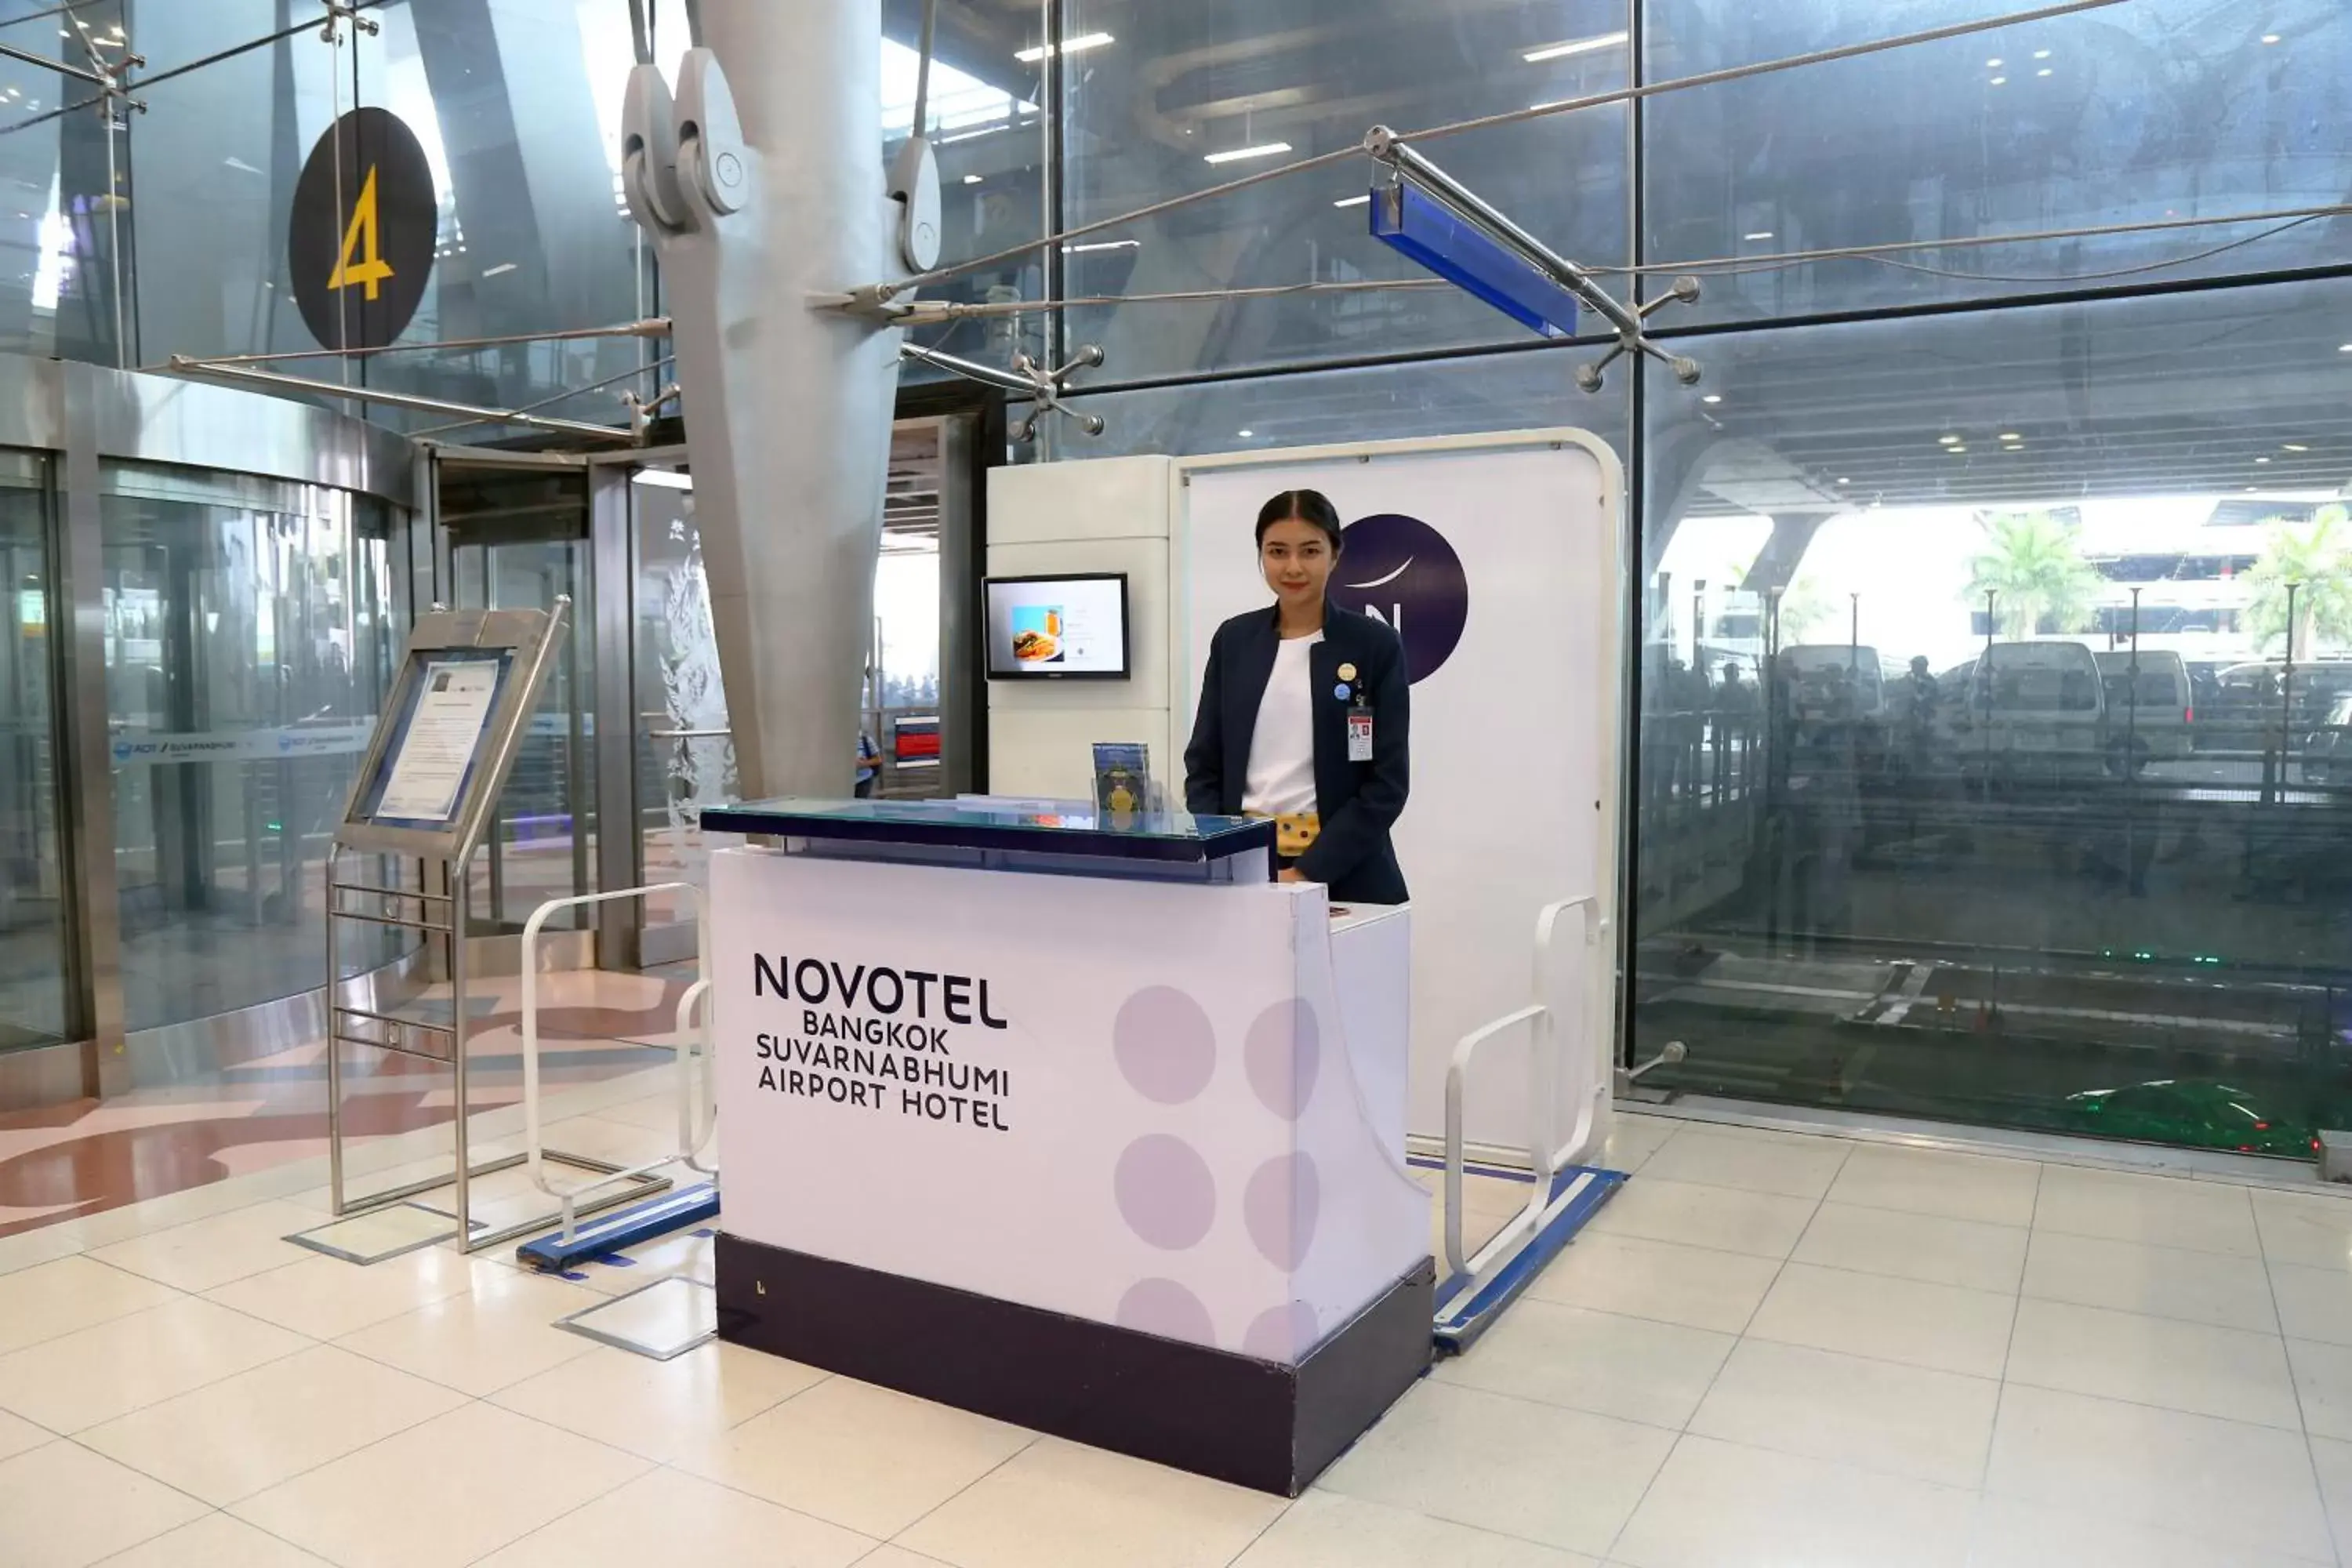 Staff in Novotel Bangkok Suvarnabhumi Airport